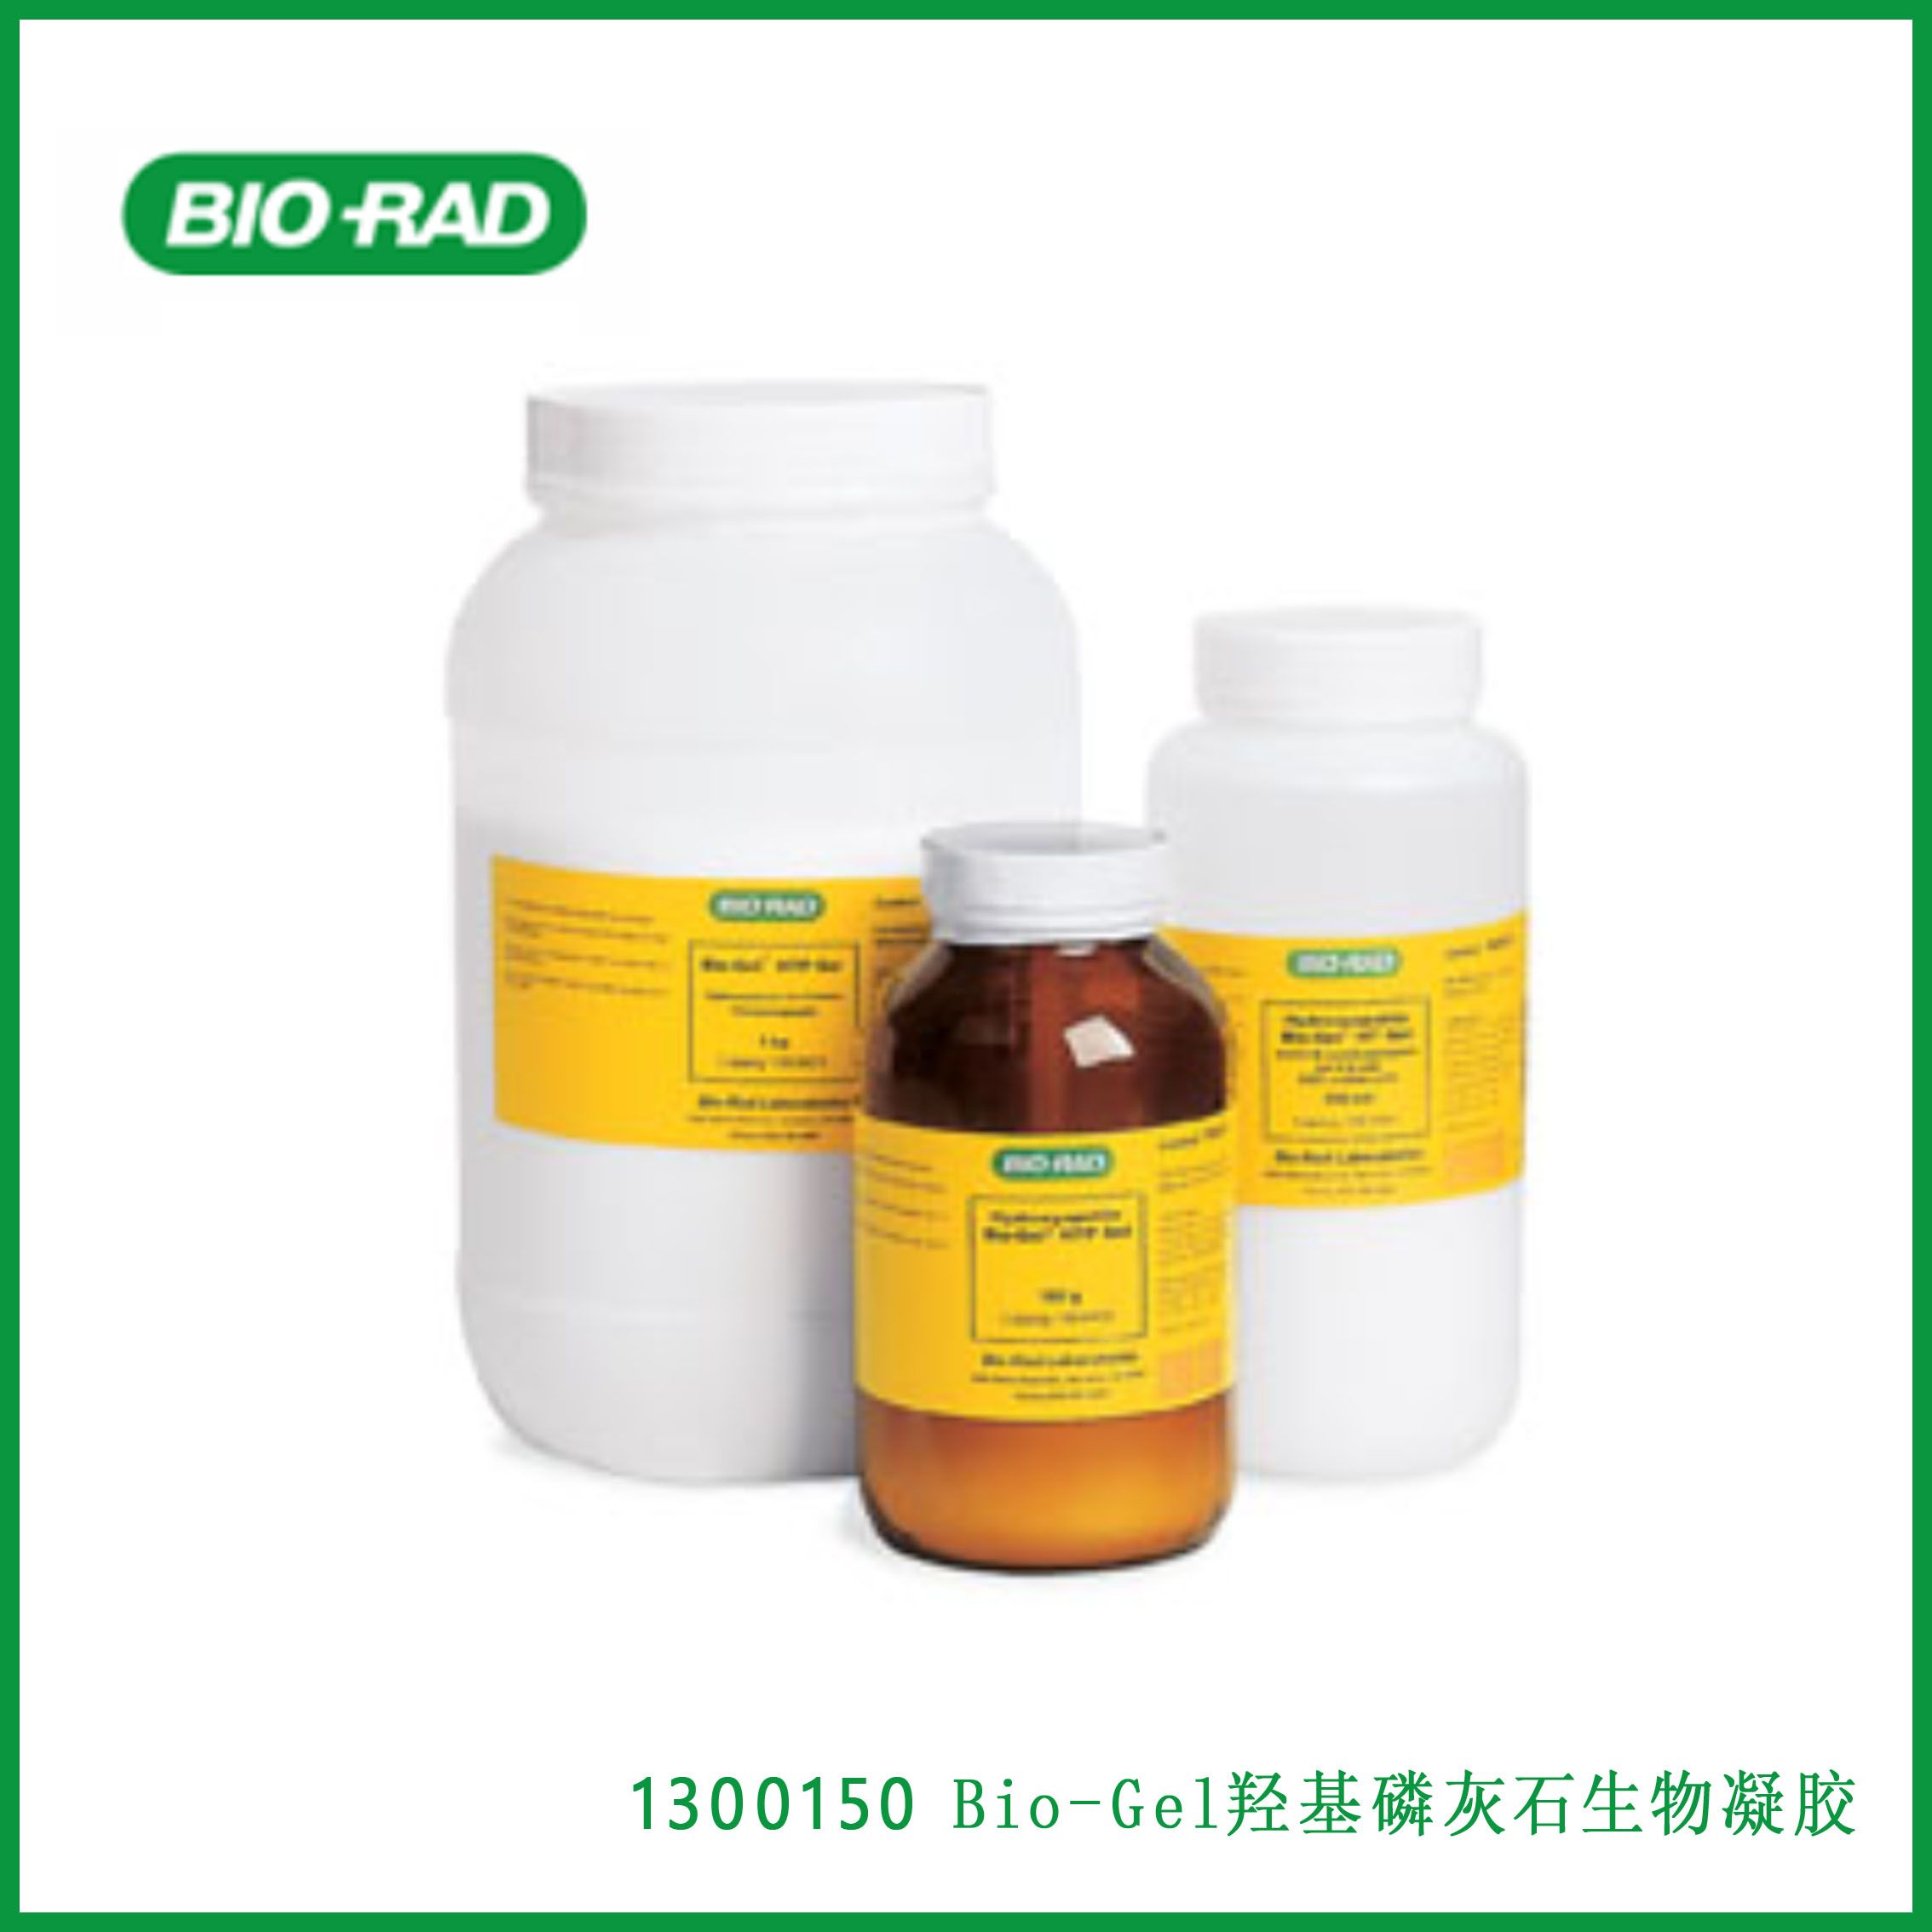 伯乐Bio-Rad 1300150Bio-Gel HT Hydroxyapatite，  羟基磷灰石生物凝胶，现货